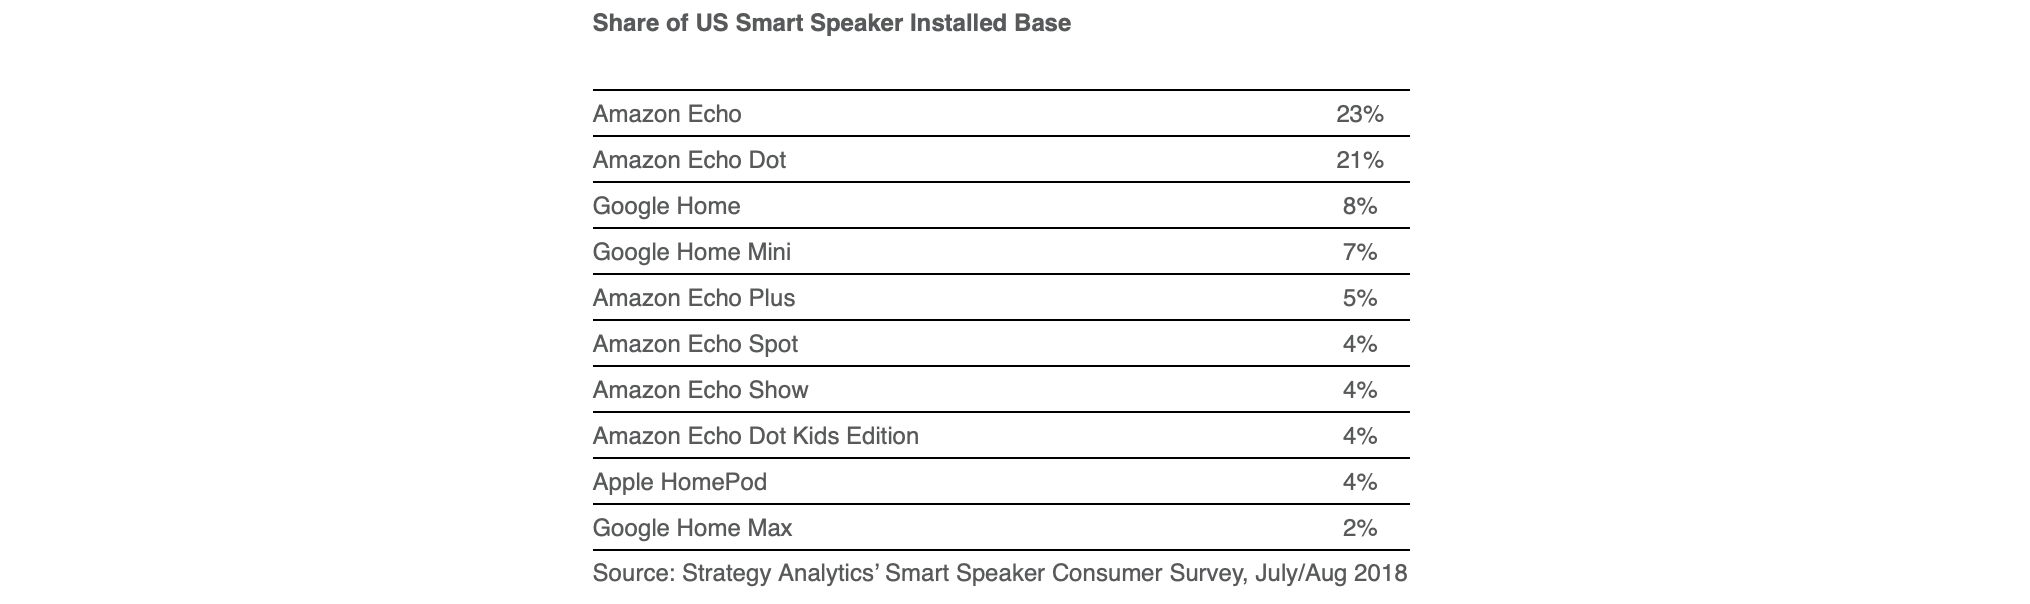 مبيعات مكبرات الصوت الذكية في الولايات المتحدة